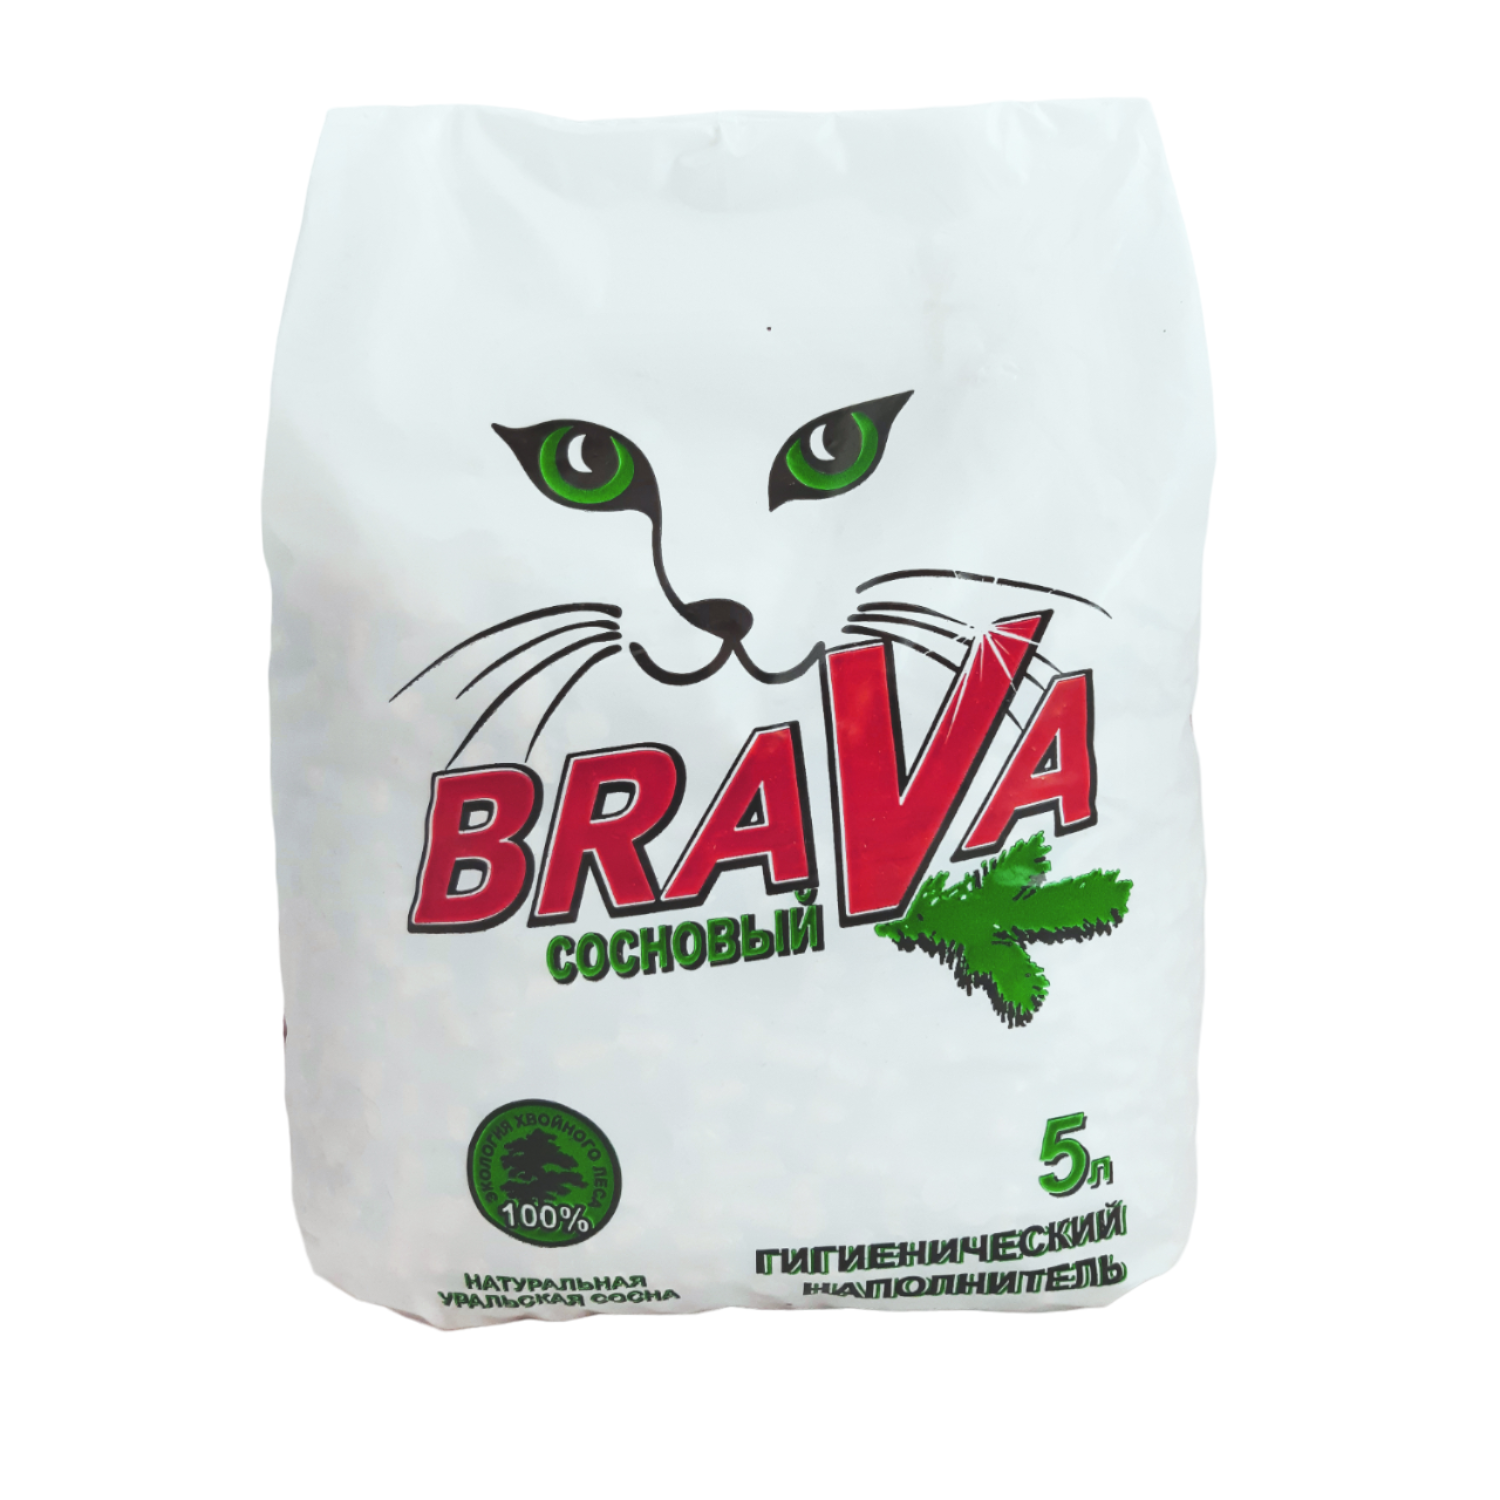 Наполнитель для кошек BraVa древесный впитывающий Сосновый 5л - фото 1